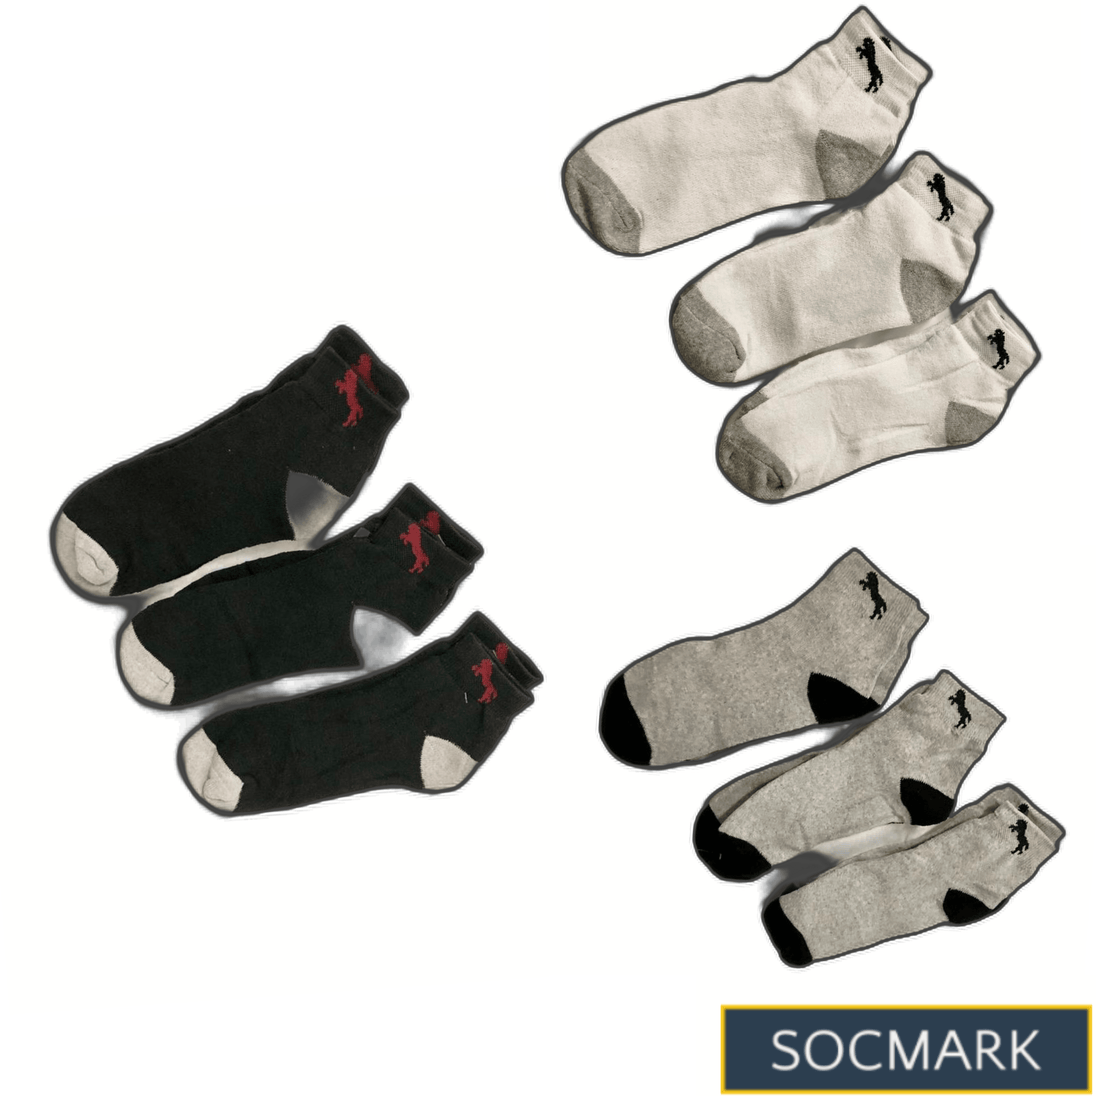 High quality socks for men | Thermal Socks | Comfortable Socks